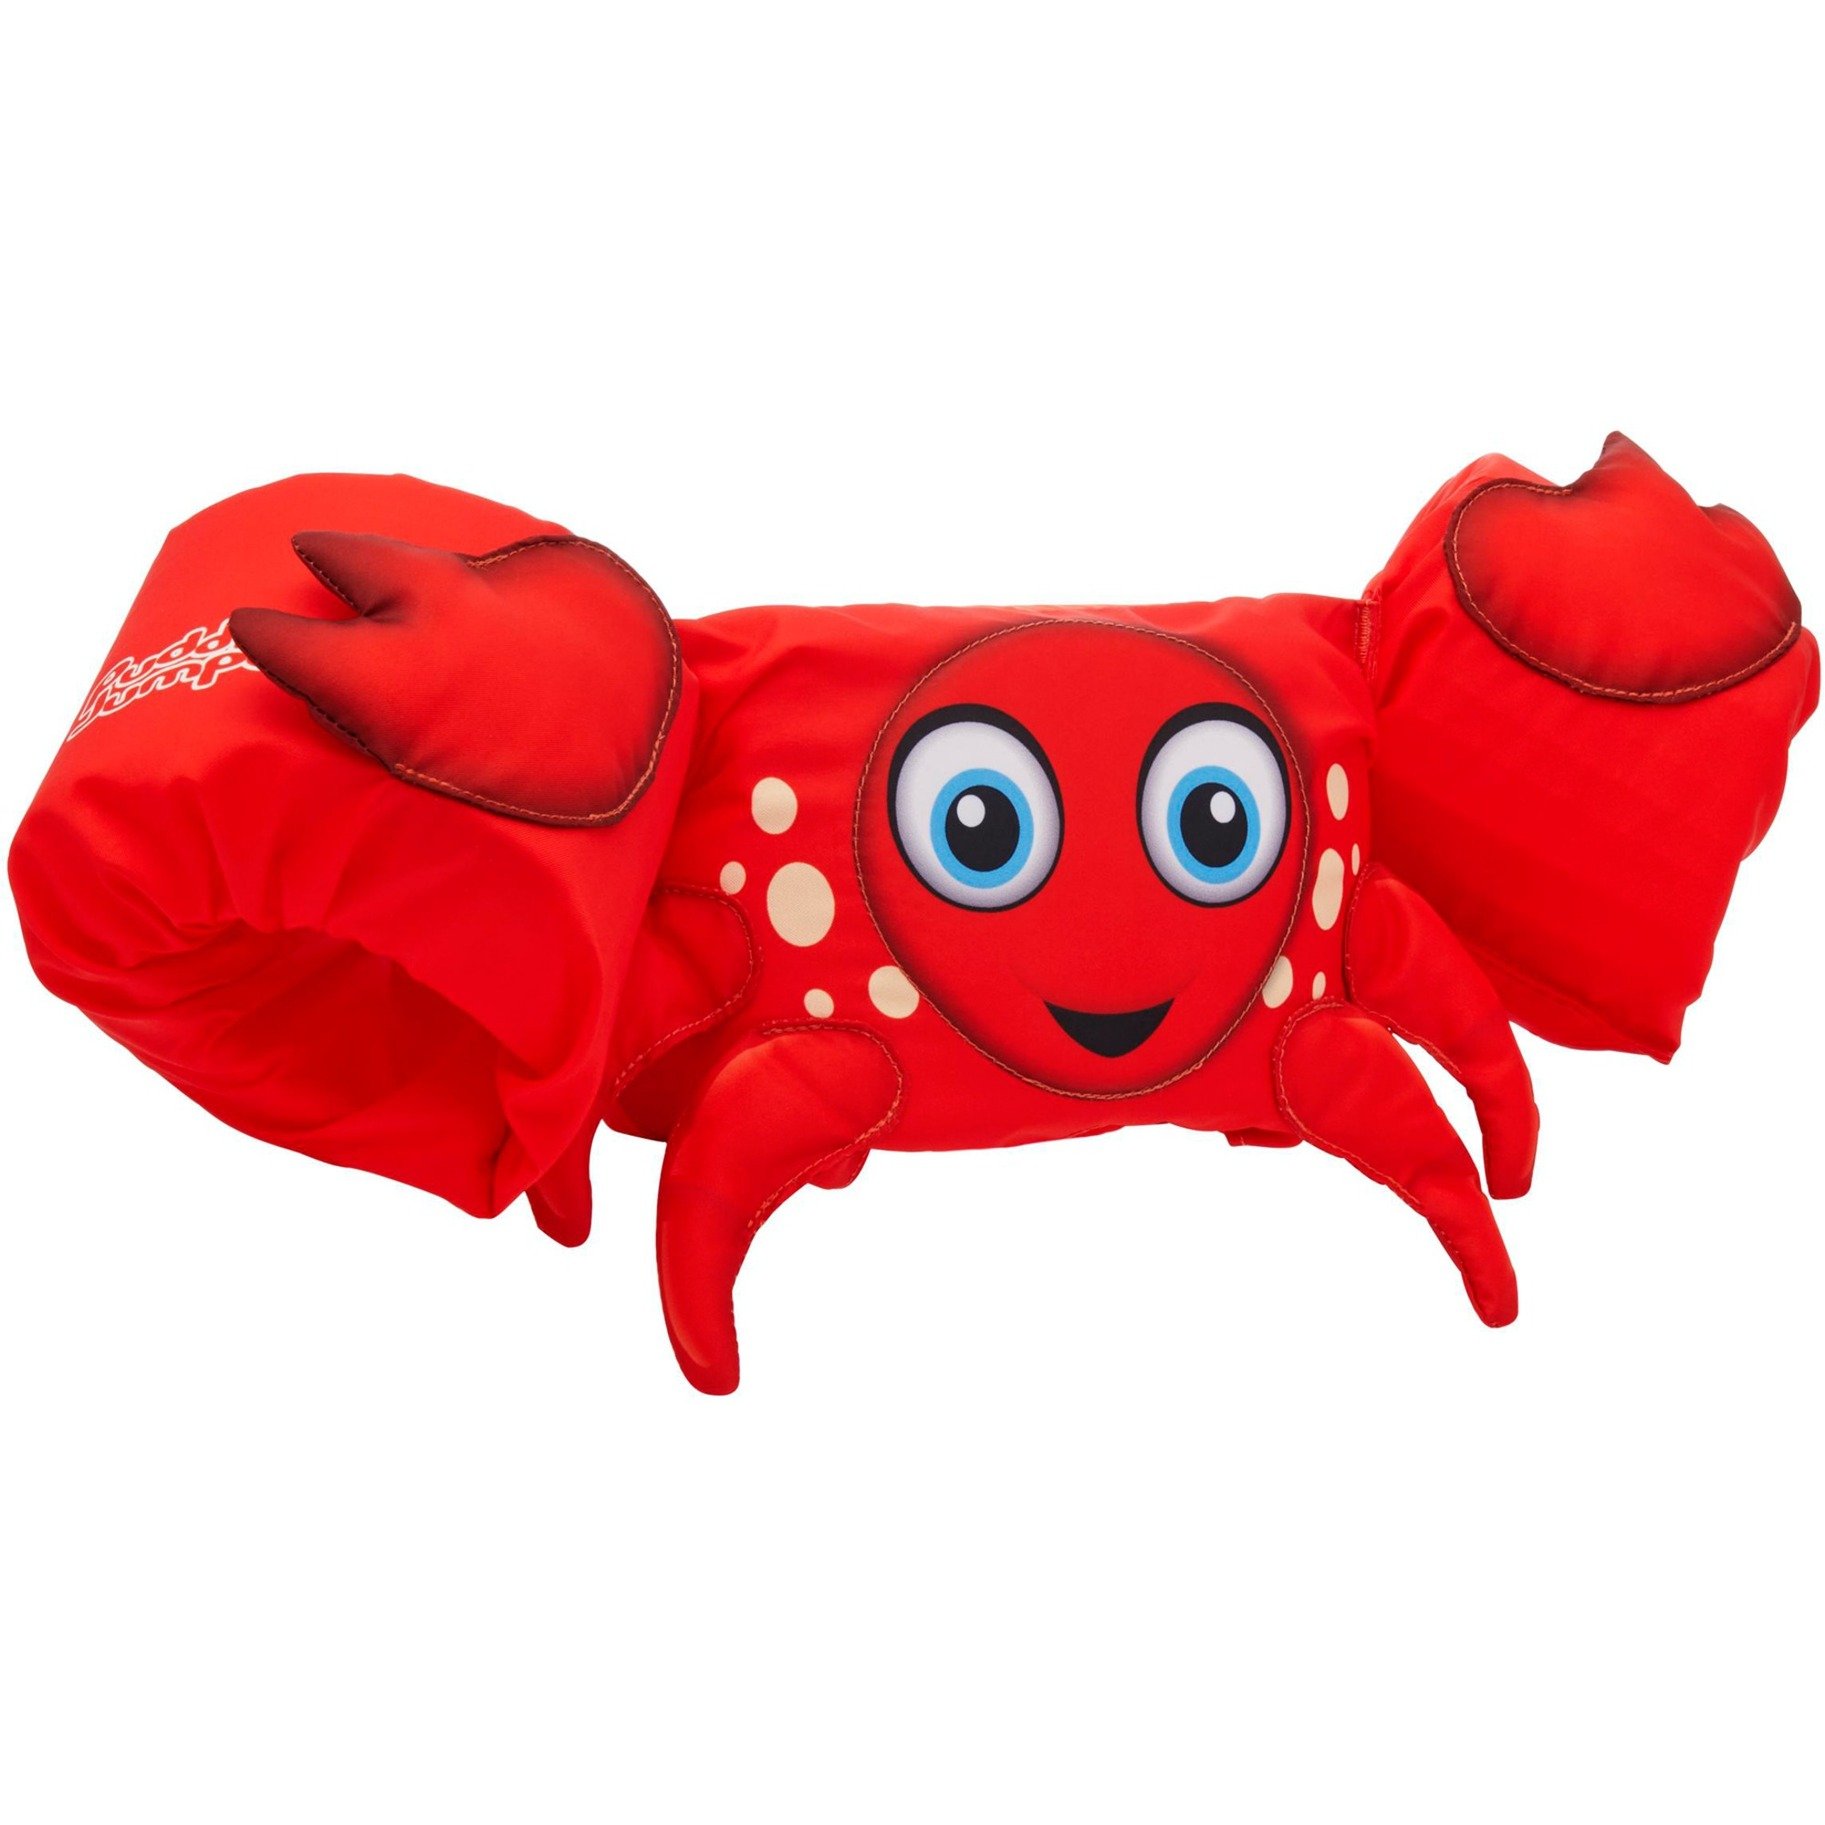 Image of Alternate - Puddle Jumper 3D Krabbe, Schwimmflügel online einkaufen bei Alternate